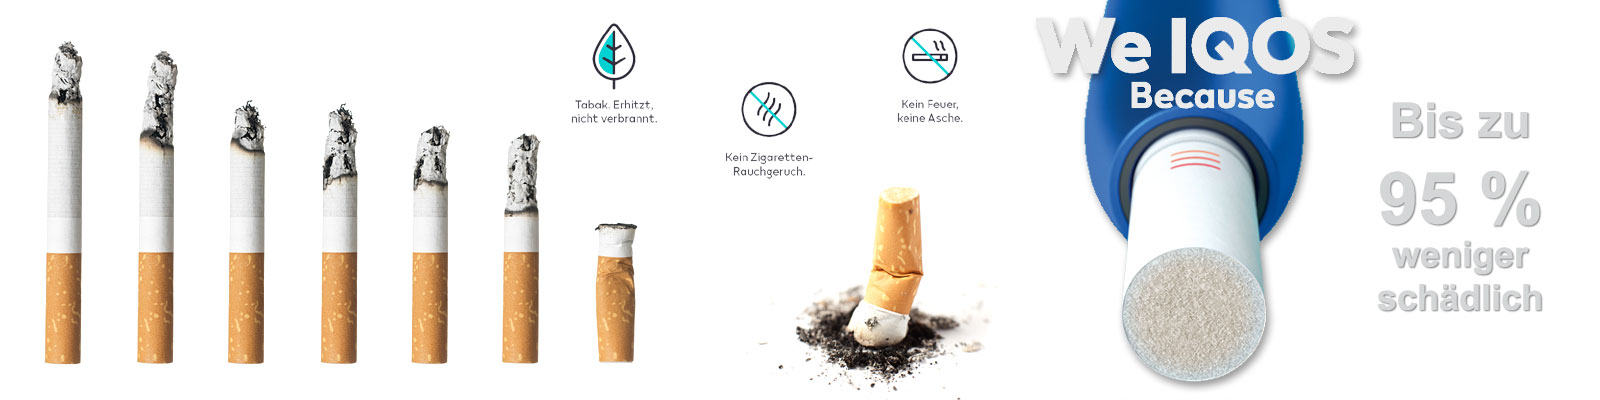 IQOS mit bis zu 95% weniger schädlich gegenüber rauchender und ausgedrückter Zigarette